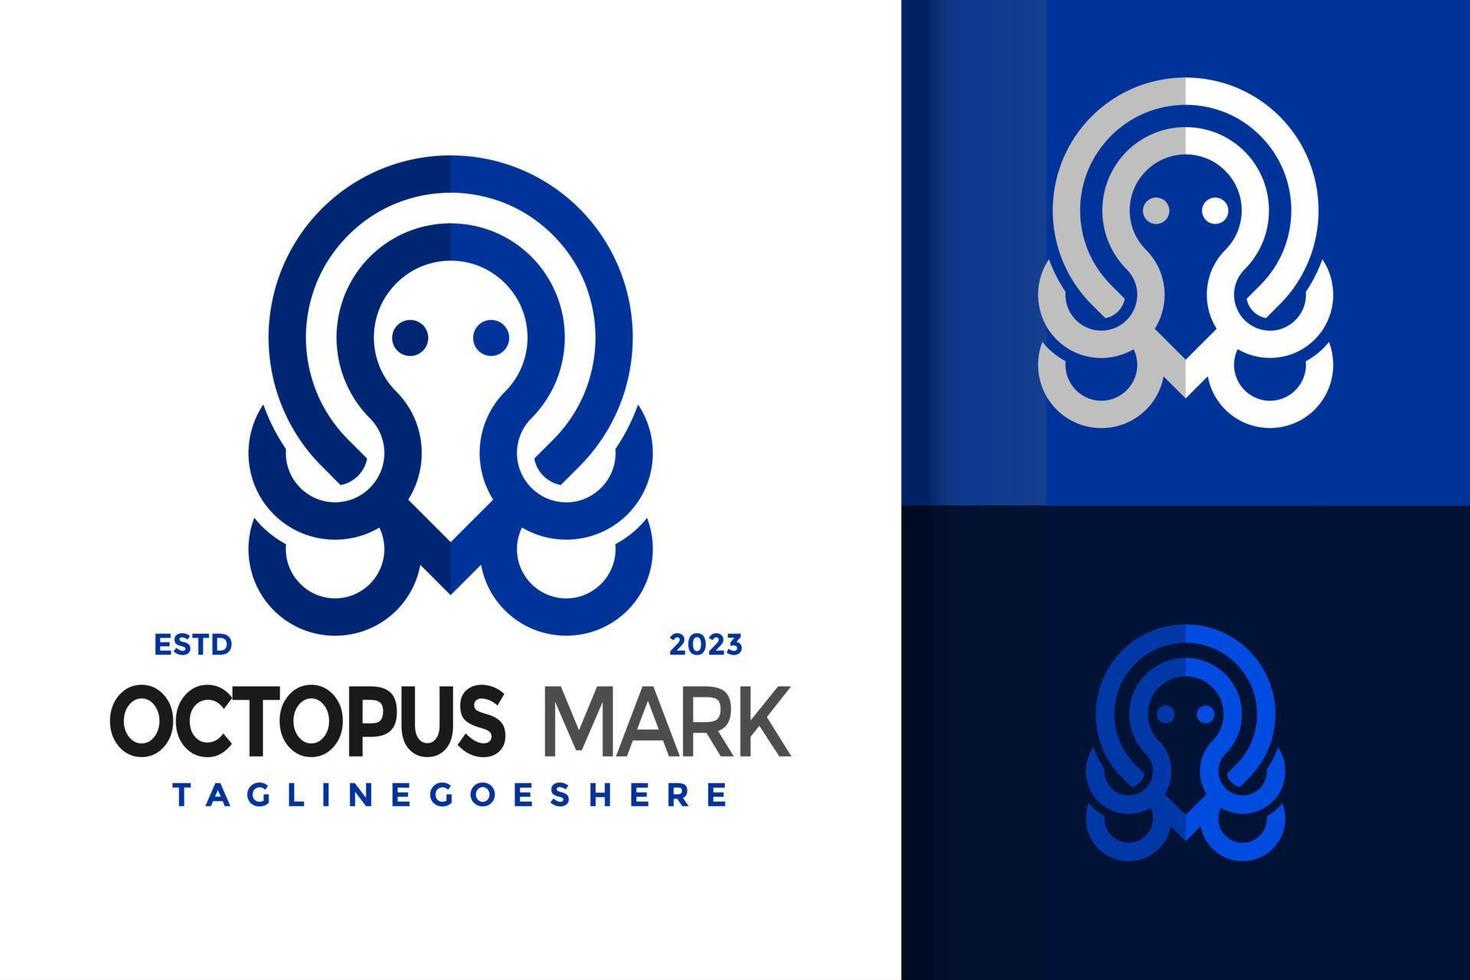 abstract Octopus pin Mark logo logos ontwerp element voorraad vector illustratie sjabloon